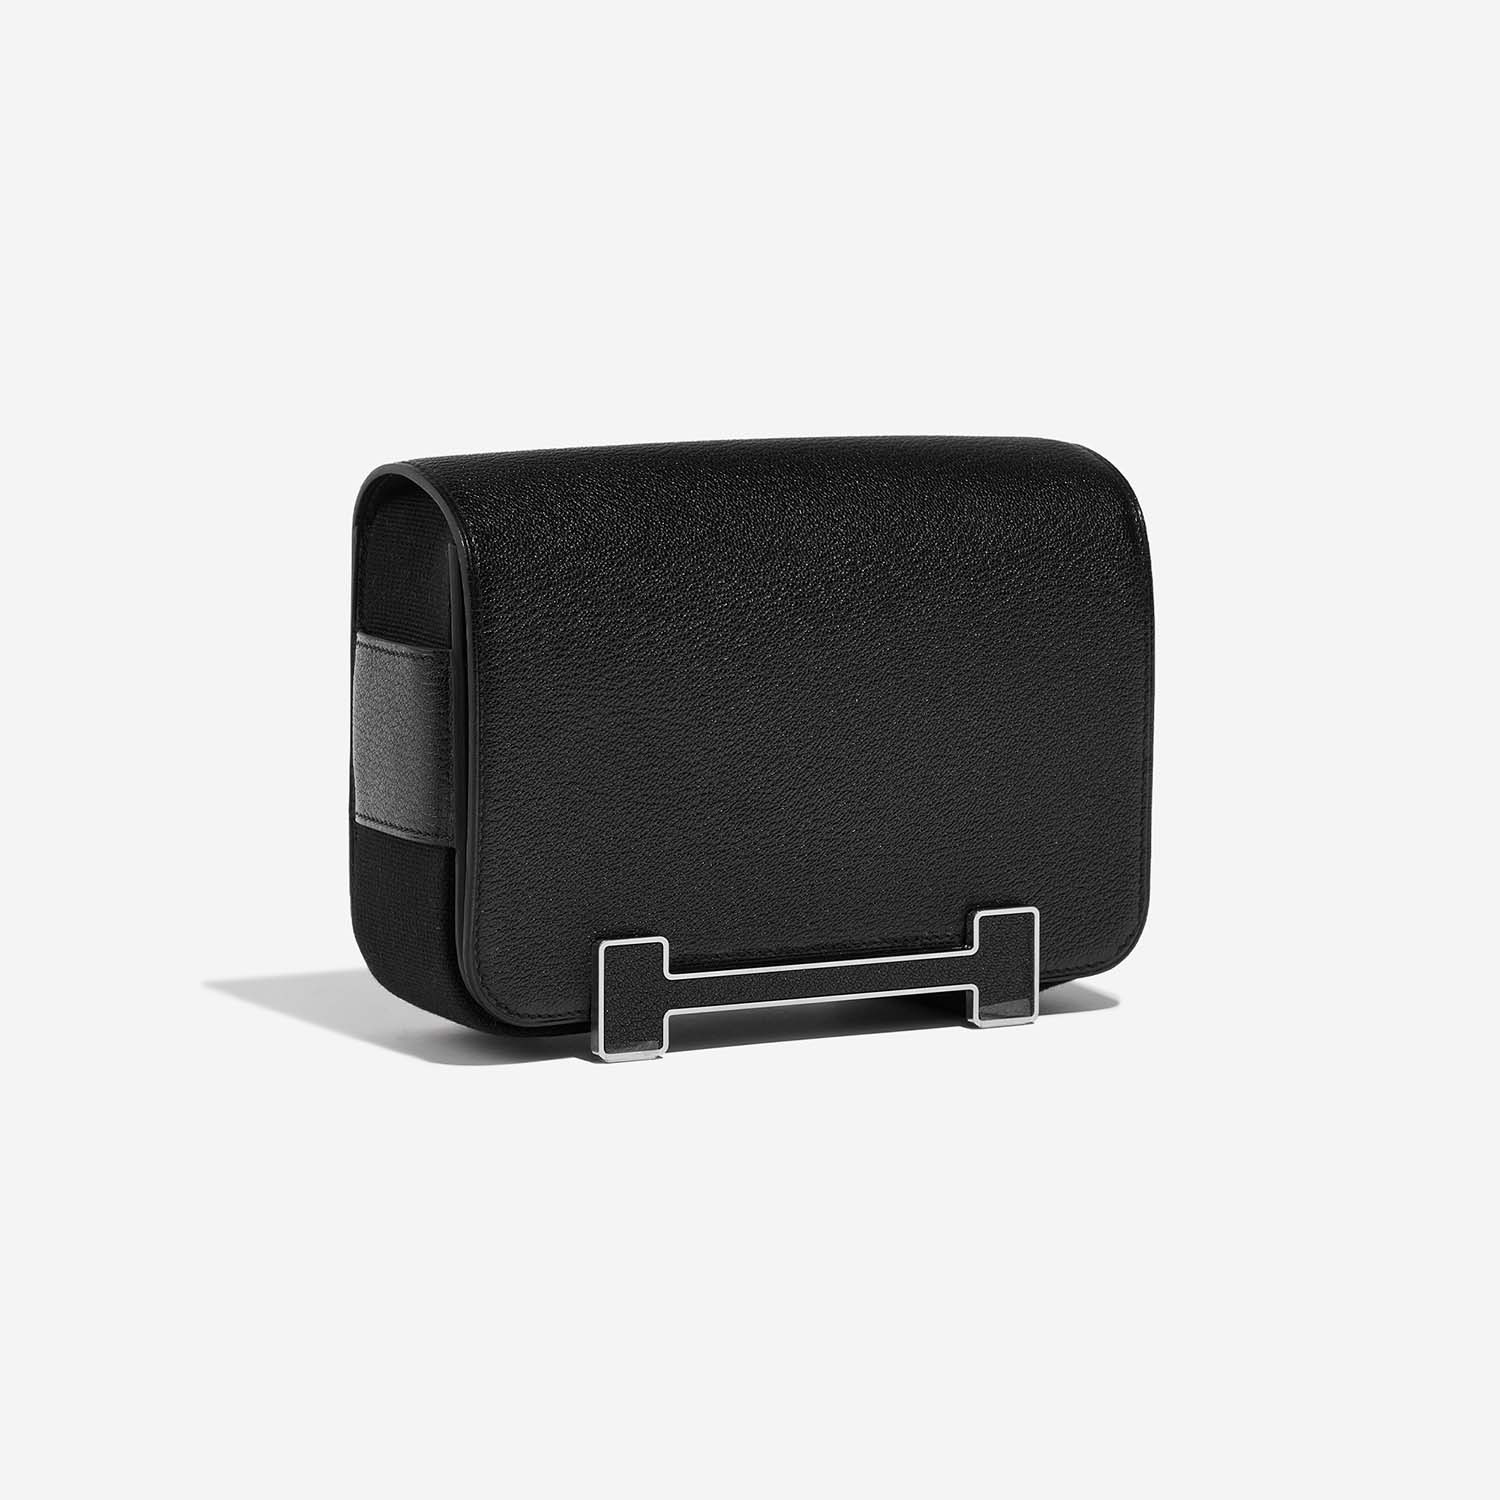 Hermès Geta oneSize Black Side Front | Verkaufen Sie Ihre Designer-Tasche auf Saclab.com